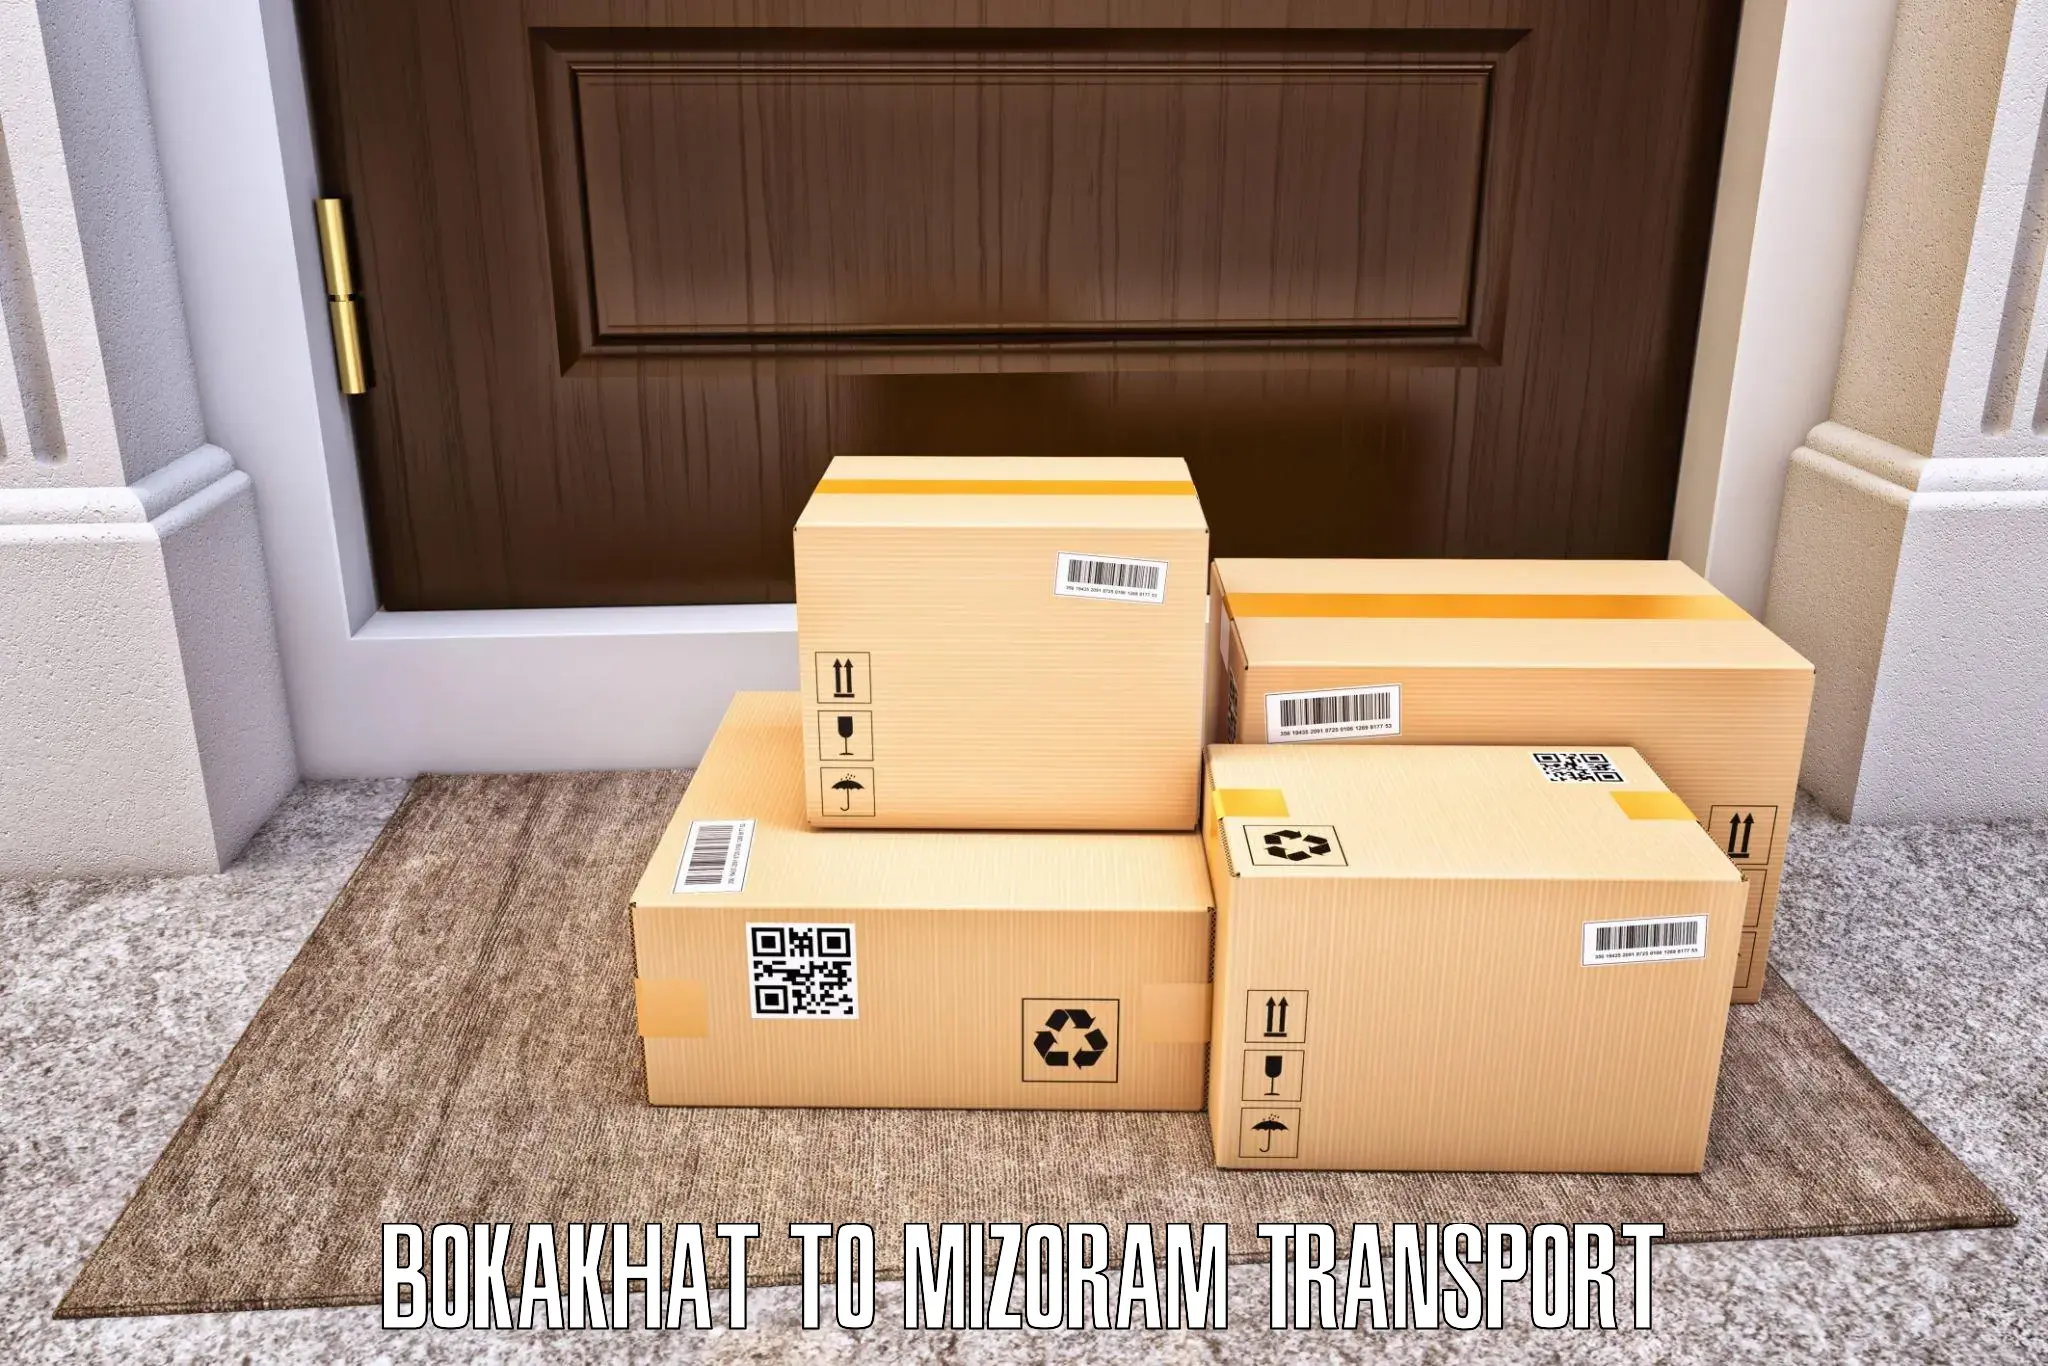 Furniture transport service Bokakhat to Saitual